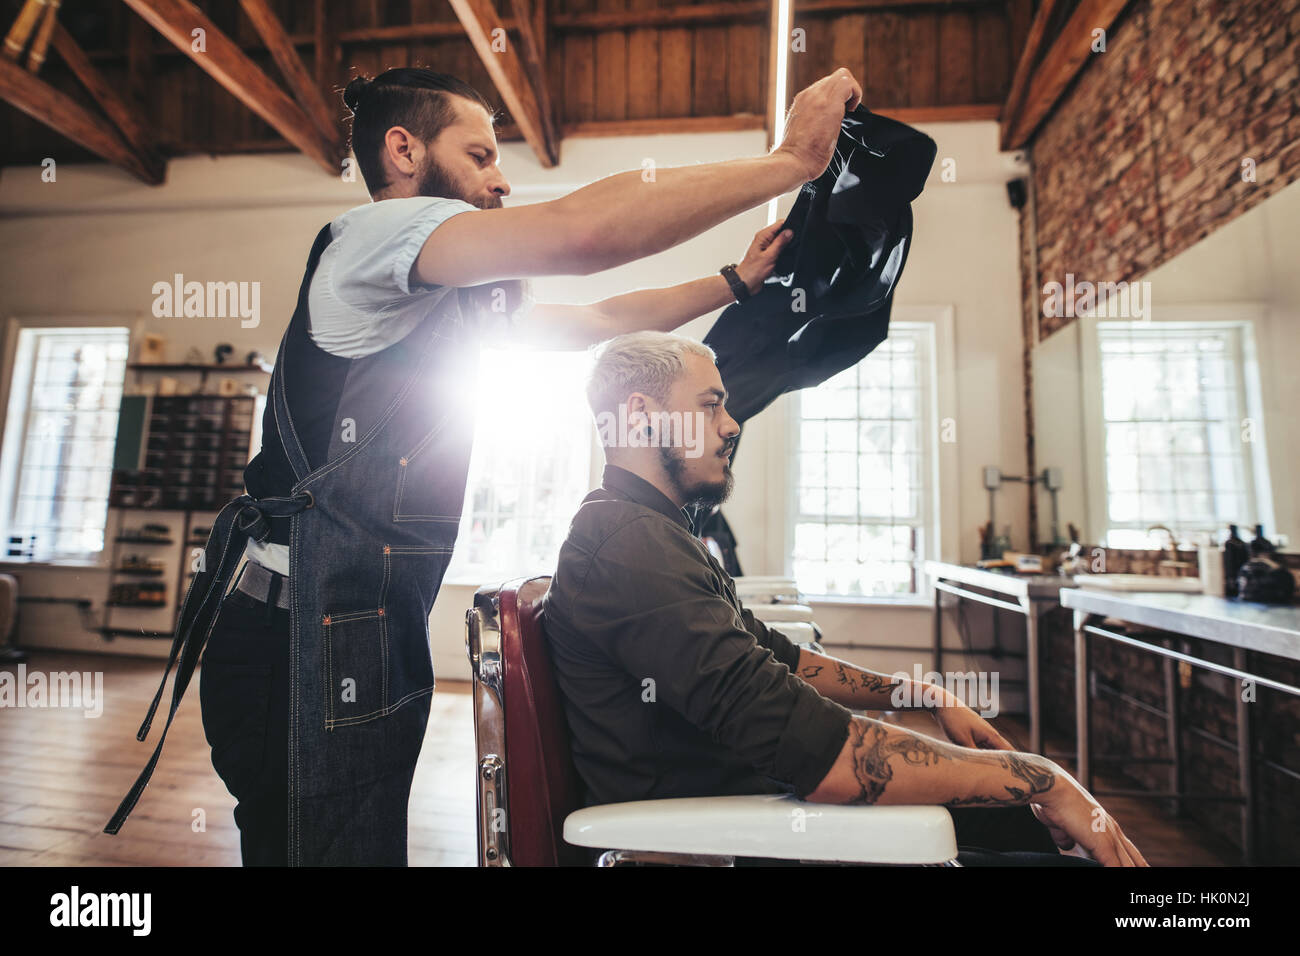 Friseur Salon Kap vor einem Haarschnitt an Kunden setzen. Männliche Friseur bei der Arbeit mit schöner Mann auf Stuhl sitzend. Stockfoto